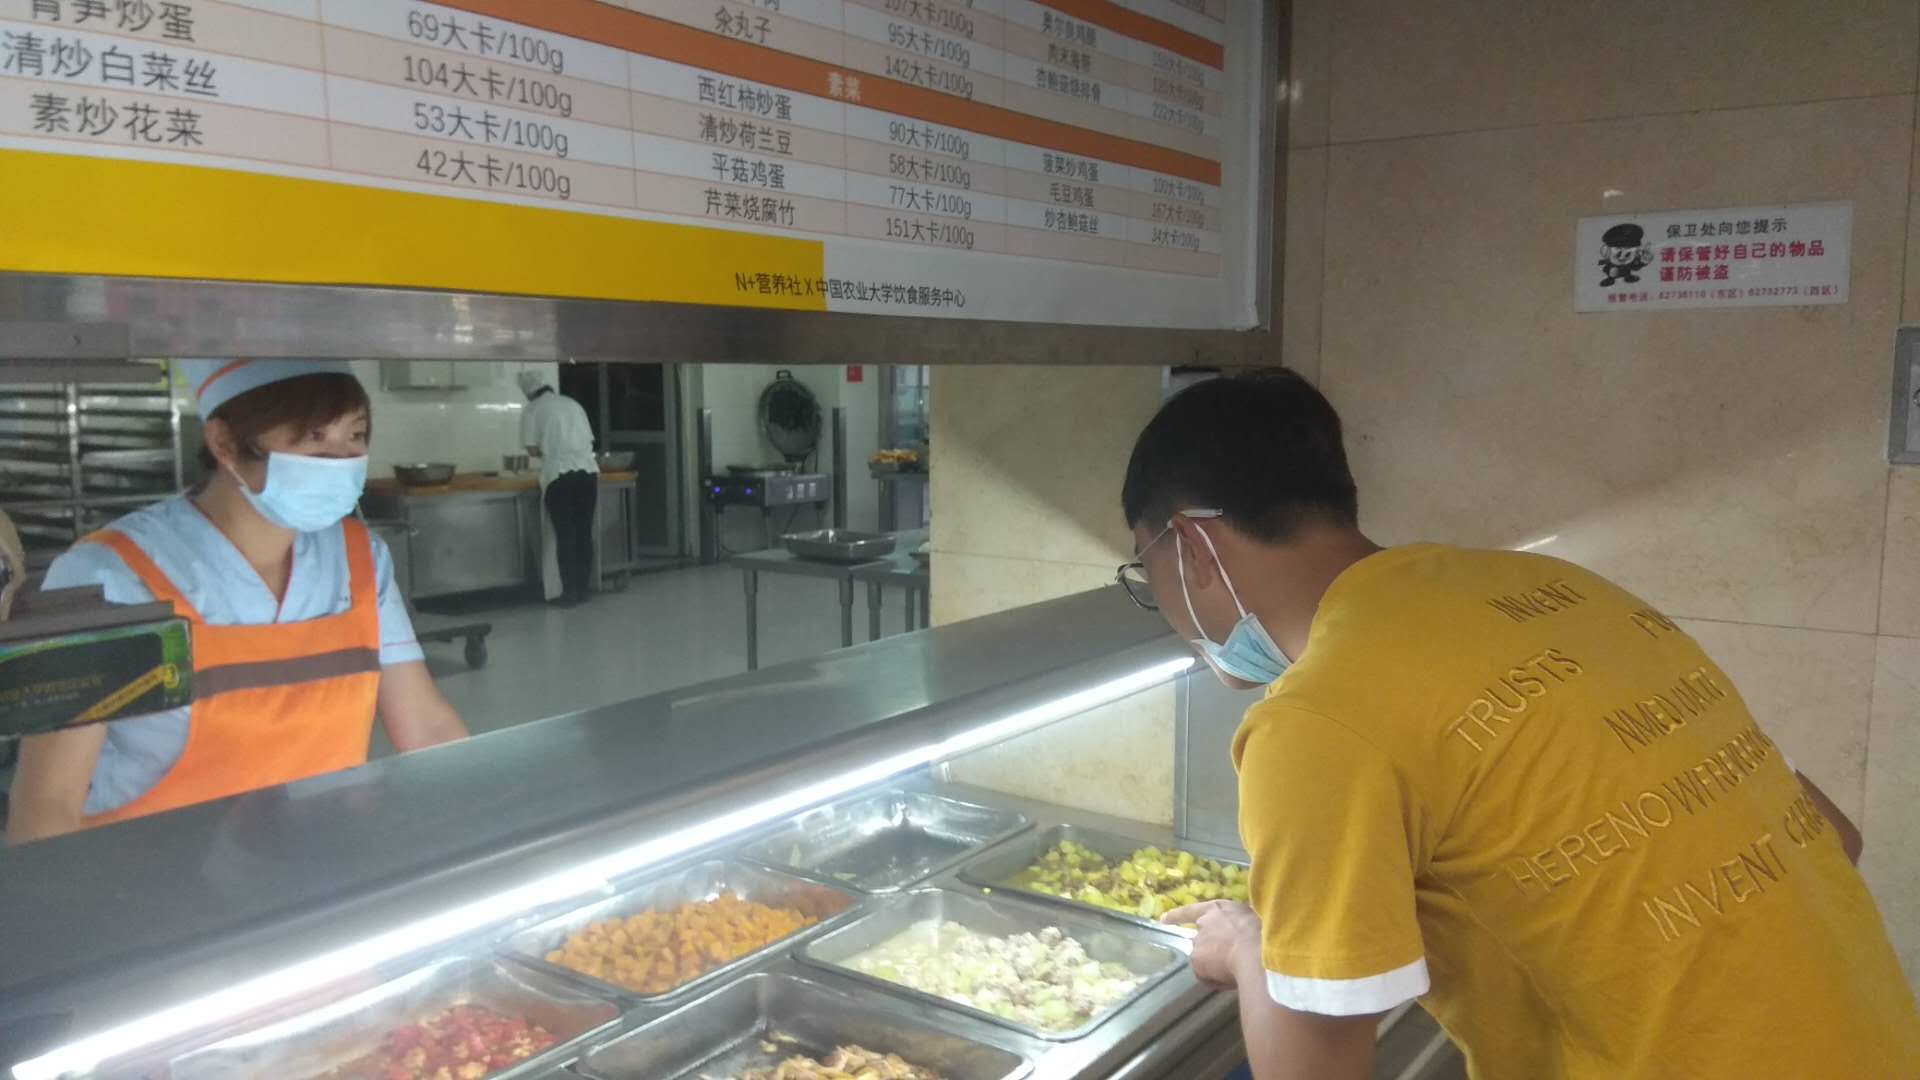 中国农业大学学生在营养餐窗口打菜.jpg